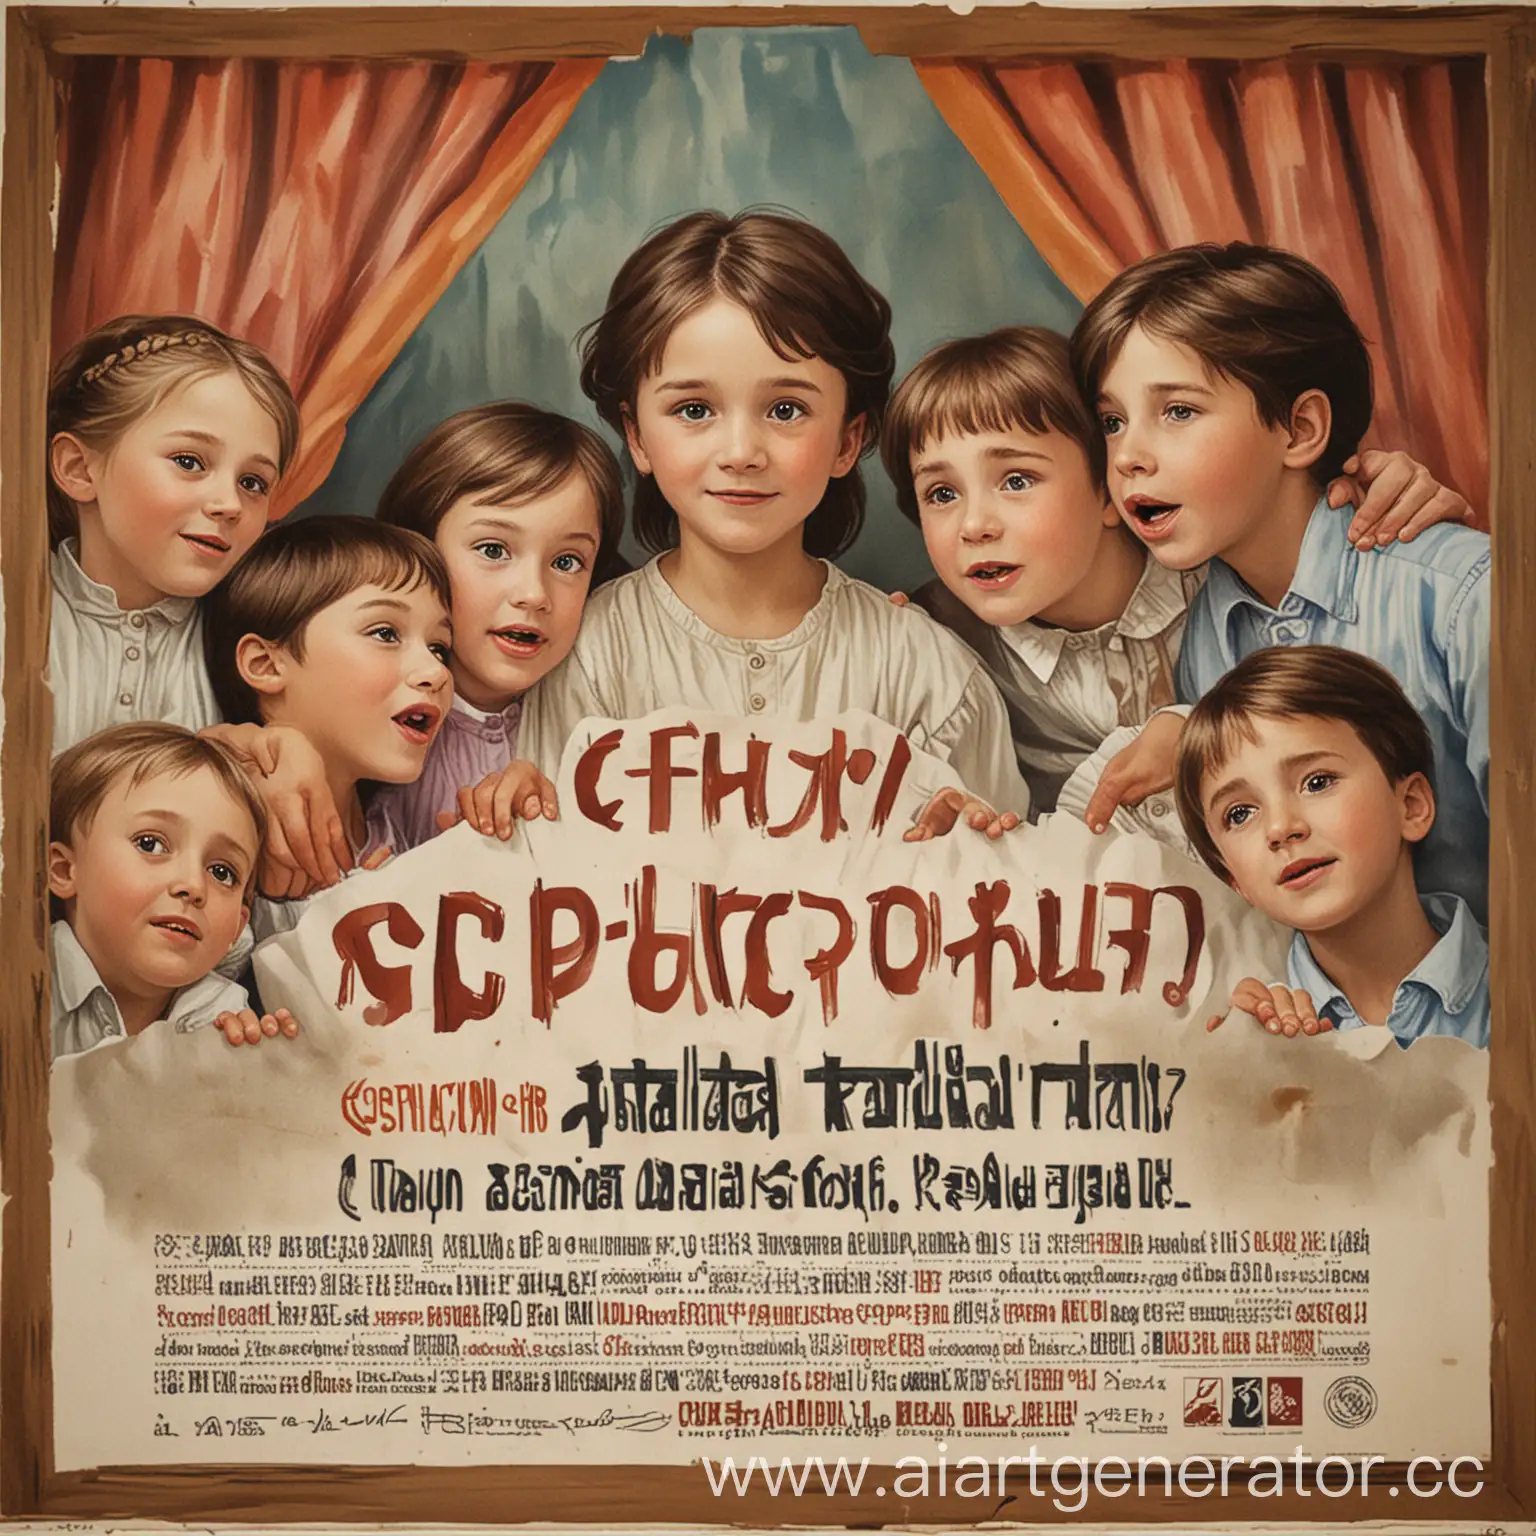 Рекламный постер о драматерапии. где дети играют  в театр. Сбоку написано русскими буквами " Коррекционно-развивающая программа по развитию коммуникативных навыков"